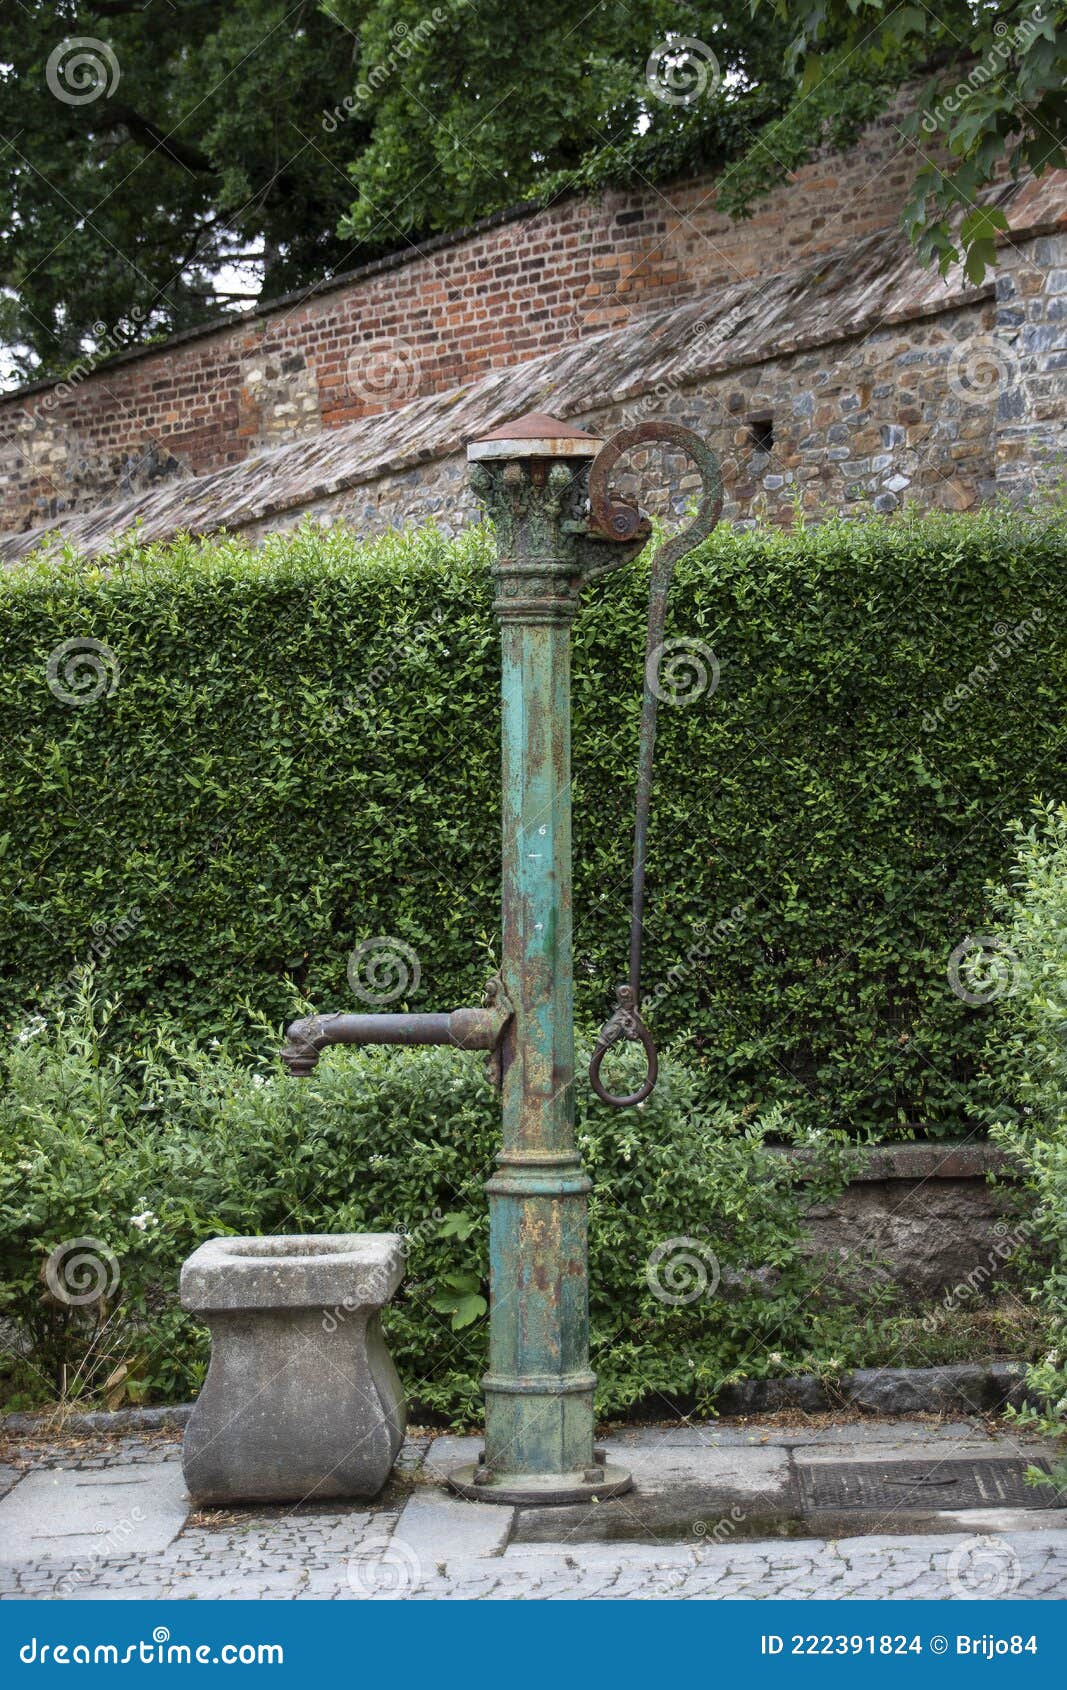 antique iron outdoor waterpump